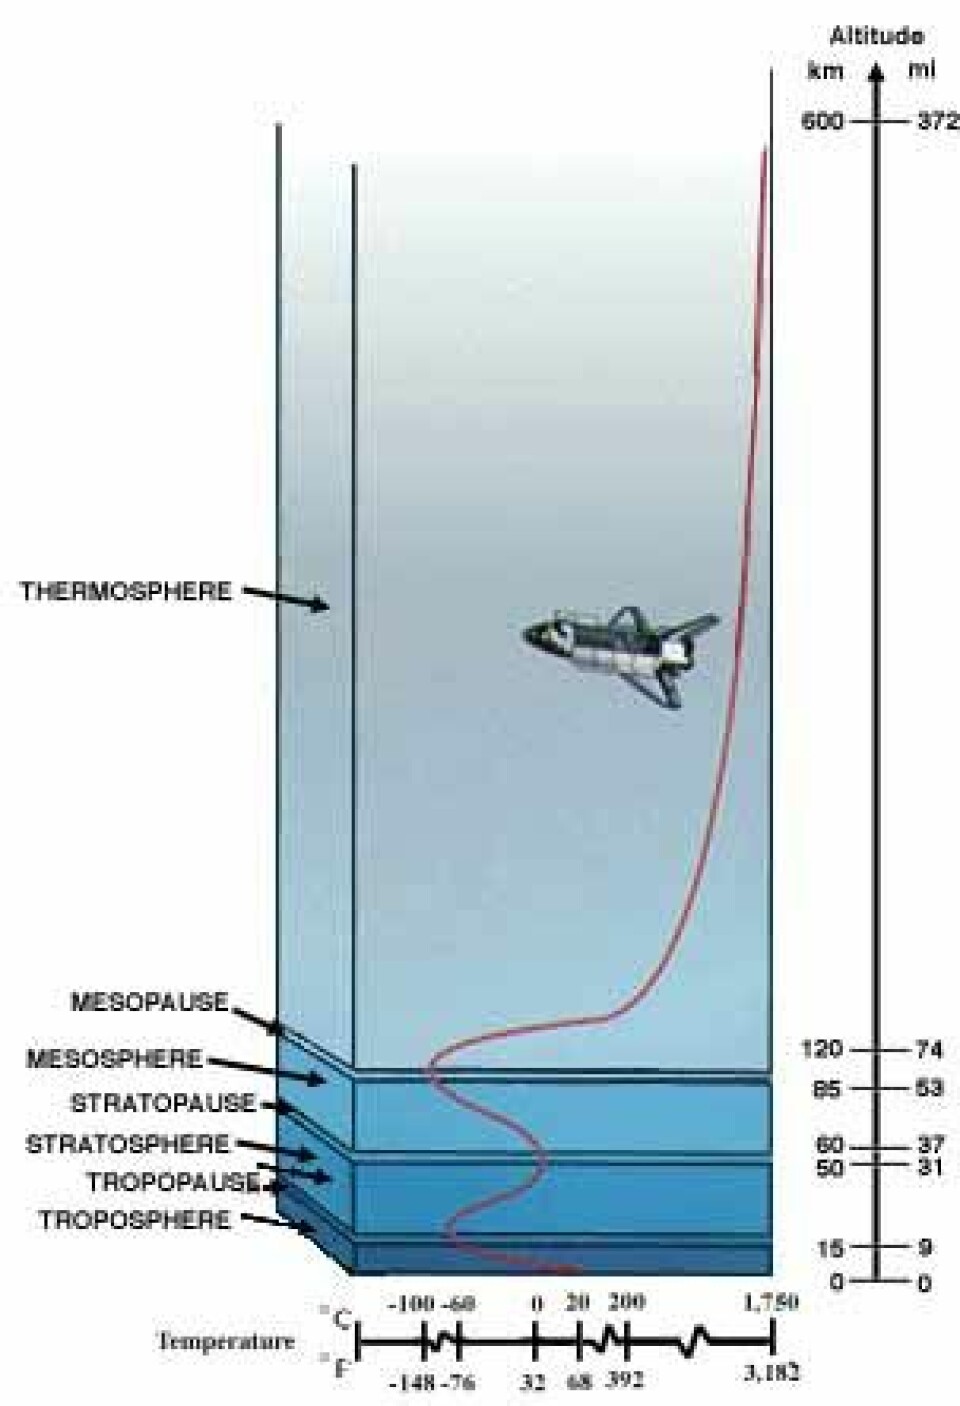 'De forskjellige lagene i atmosfæren. (Illustrasjon: NASA)'